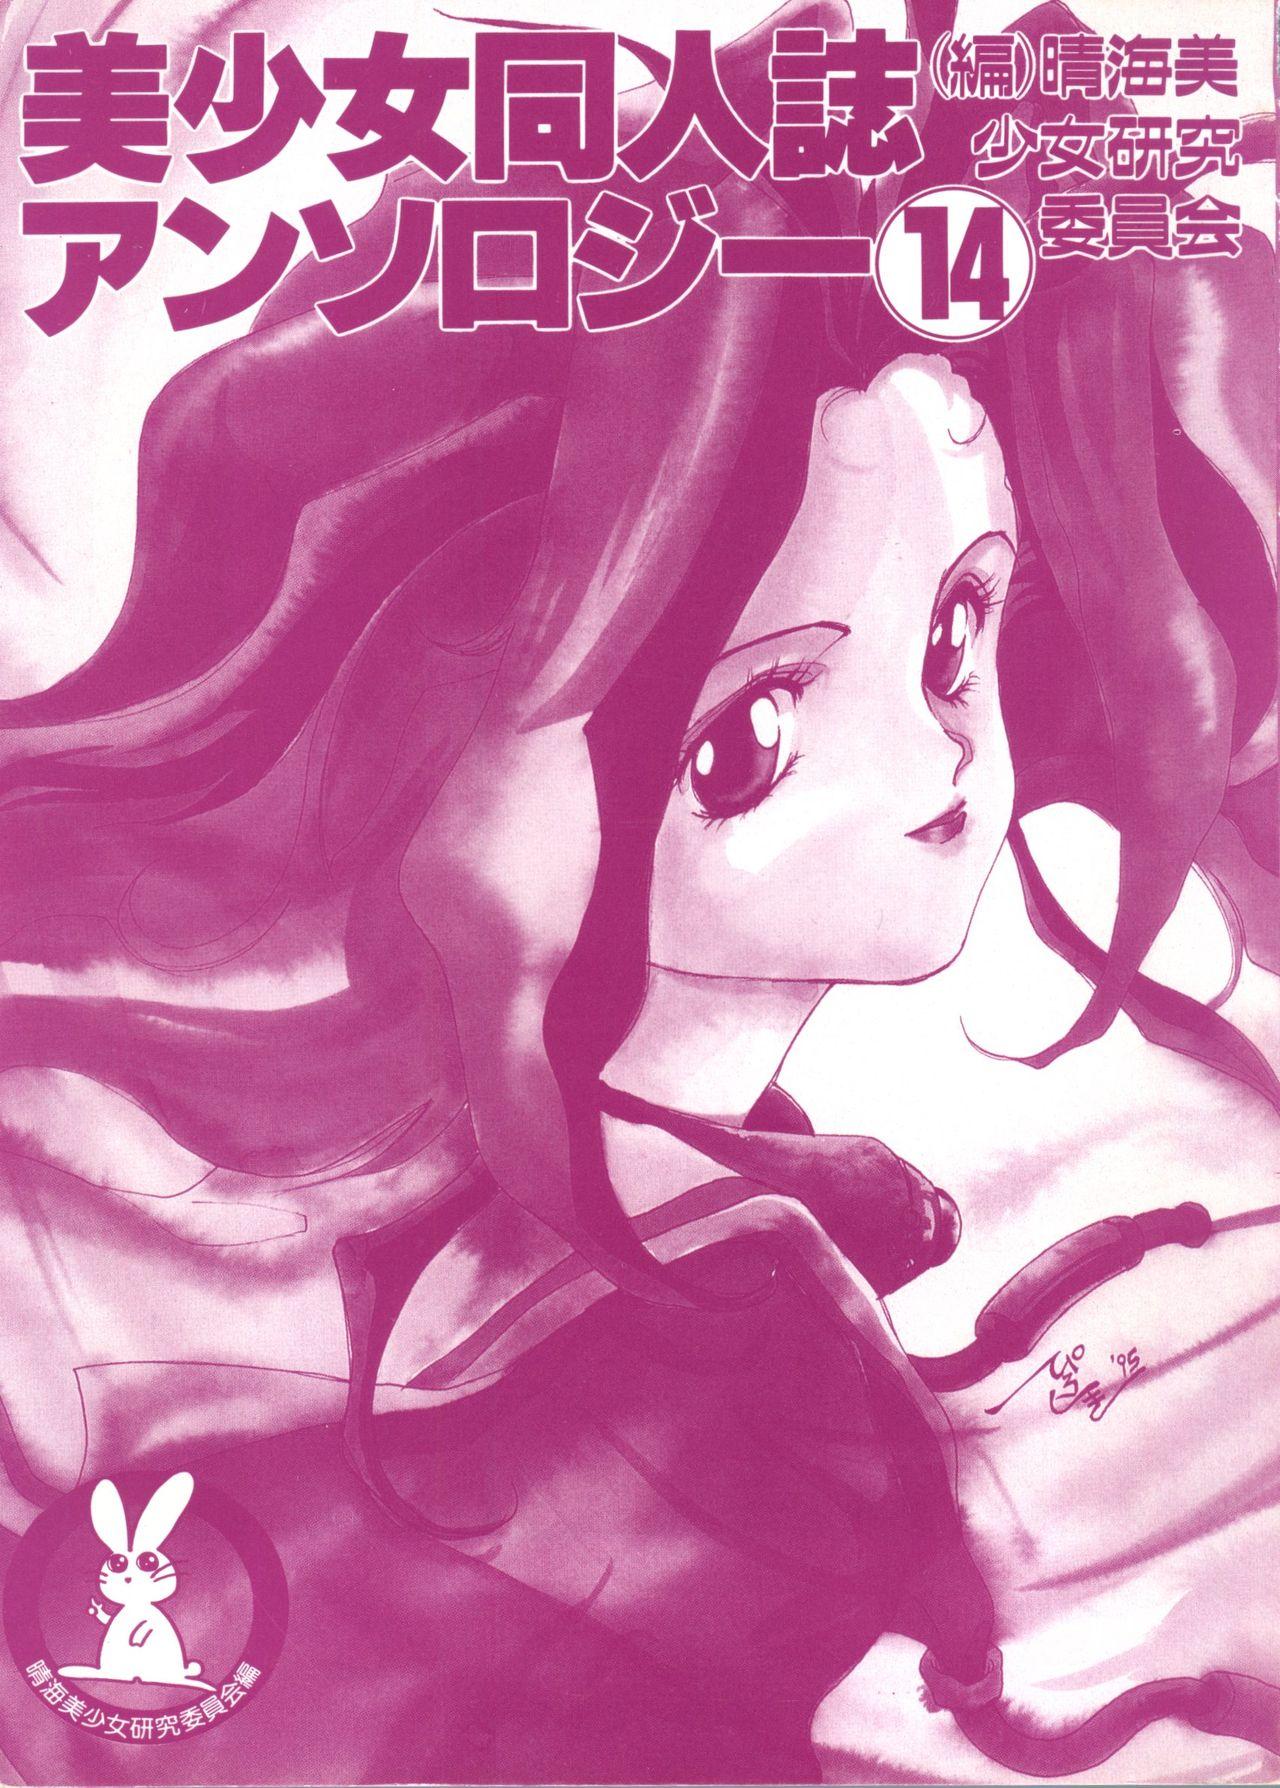 Bishoujo Doujinshi Anthology 14 1